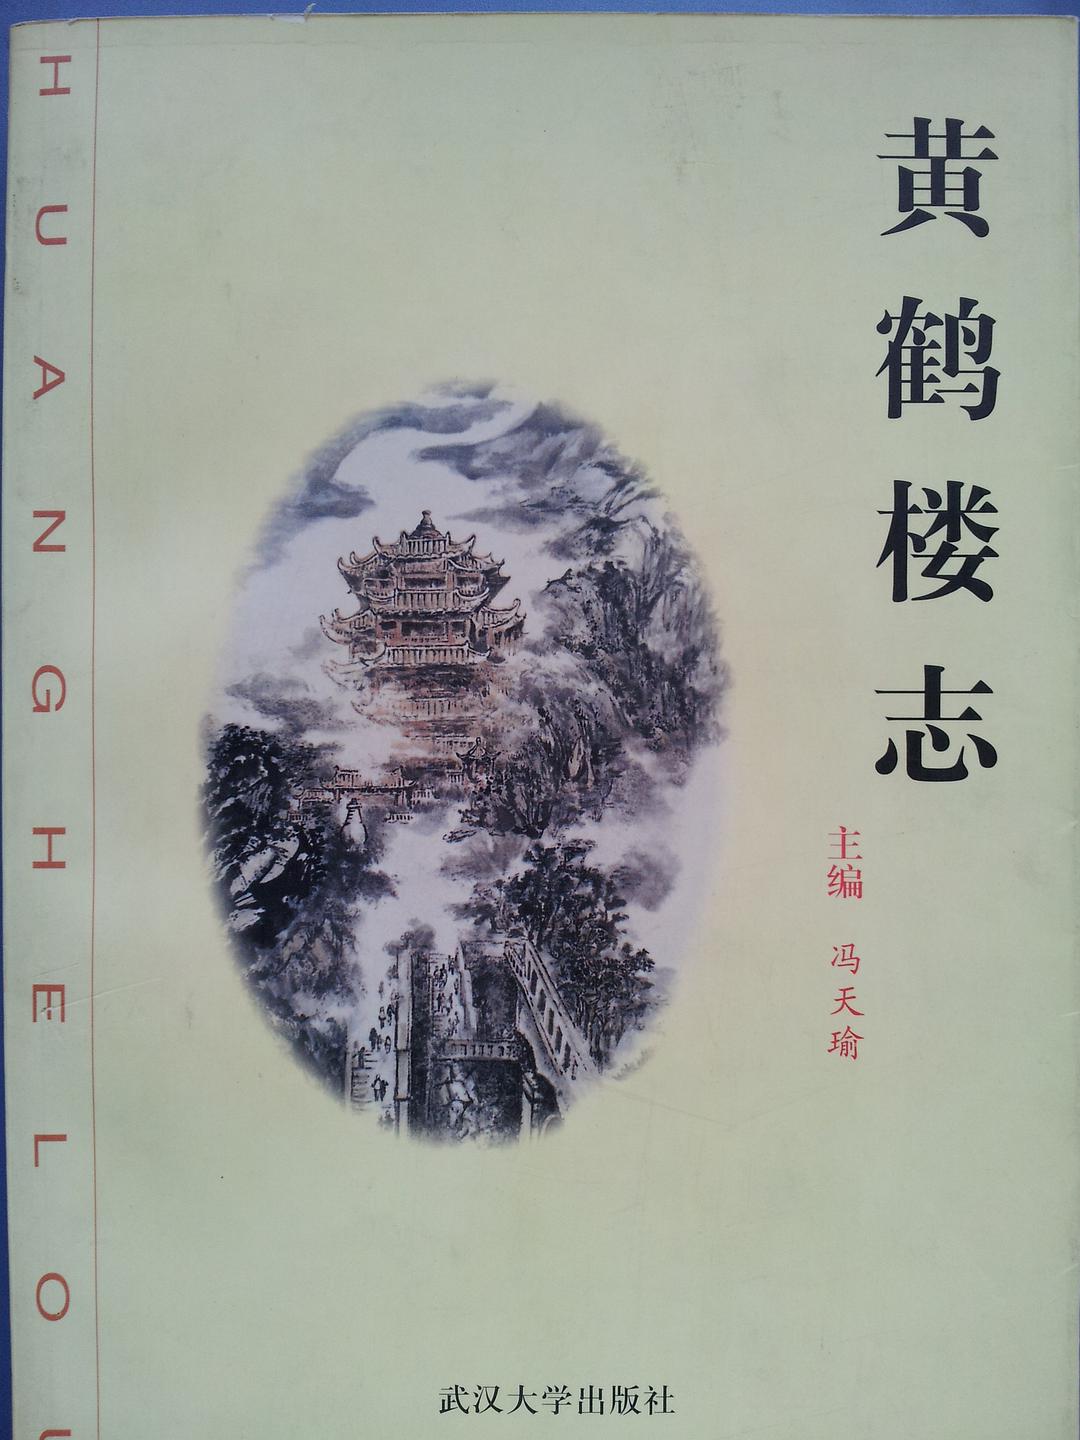 1999年版《黄鹤楼志》，编撰背后故事多